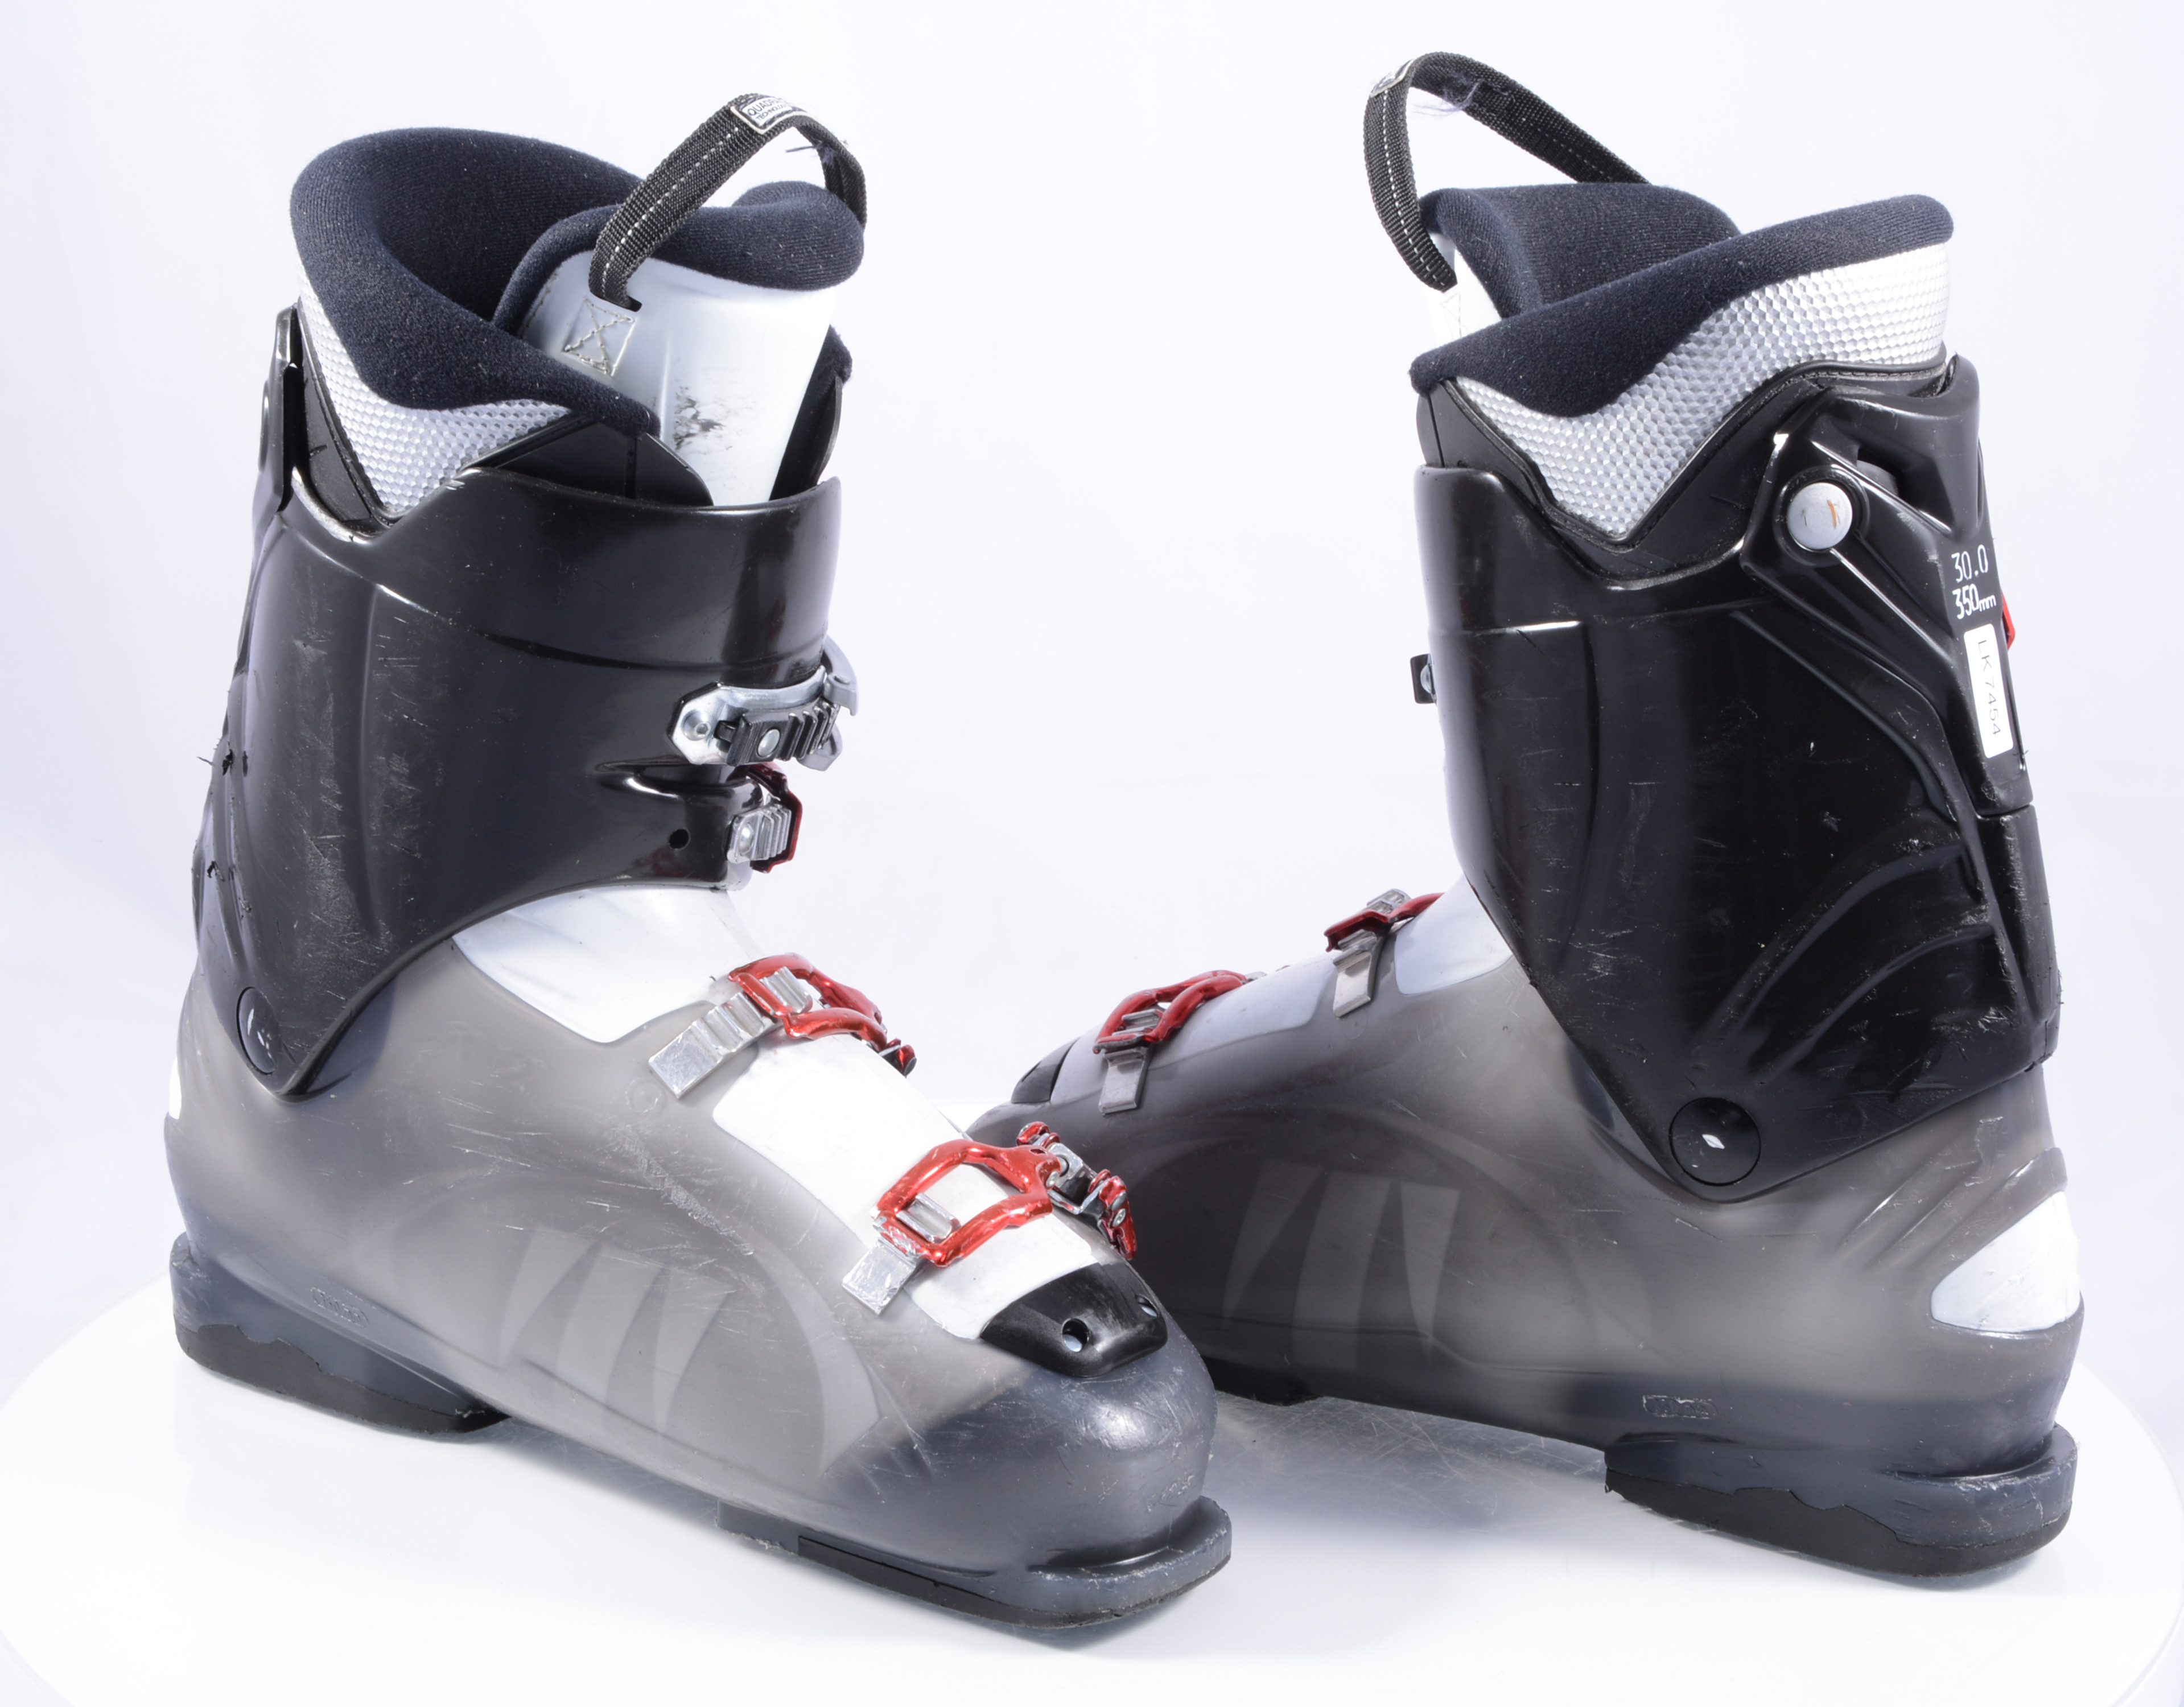 Roestig worm opslaan ski boots TECNICA MEGA + T 60, micro, macro - Mardosport.com